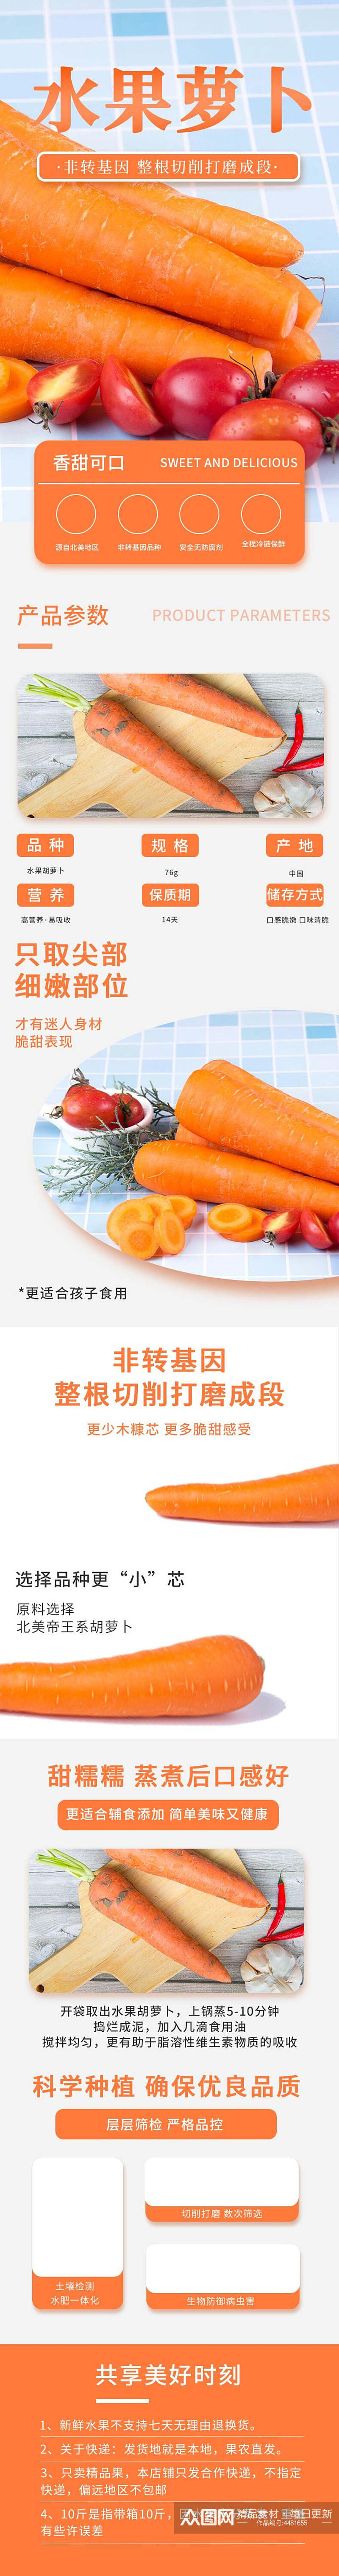 水果胡萝卜蔬菜电商详情页素材